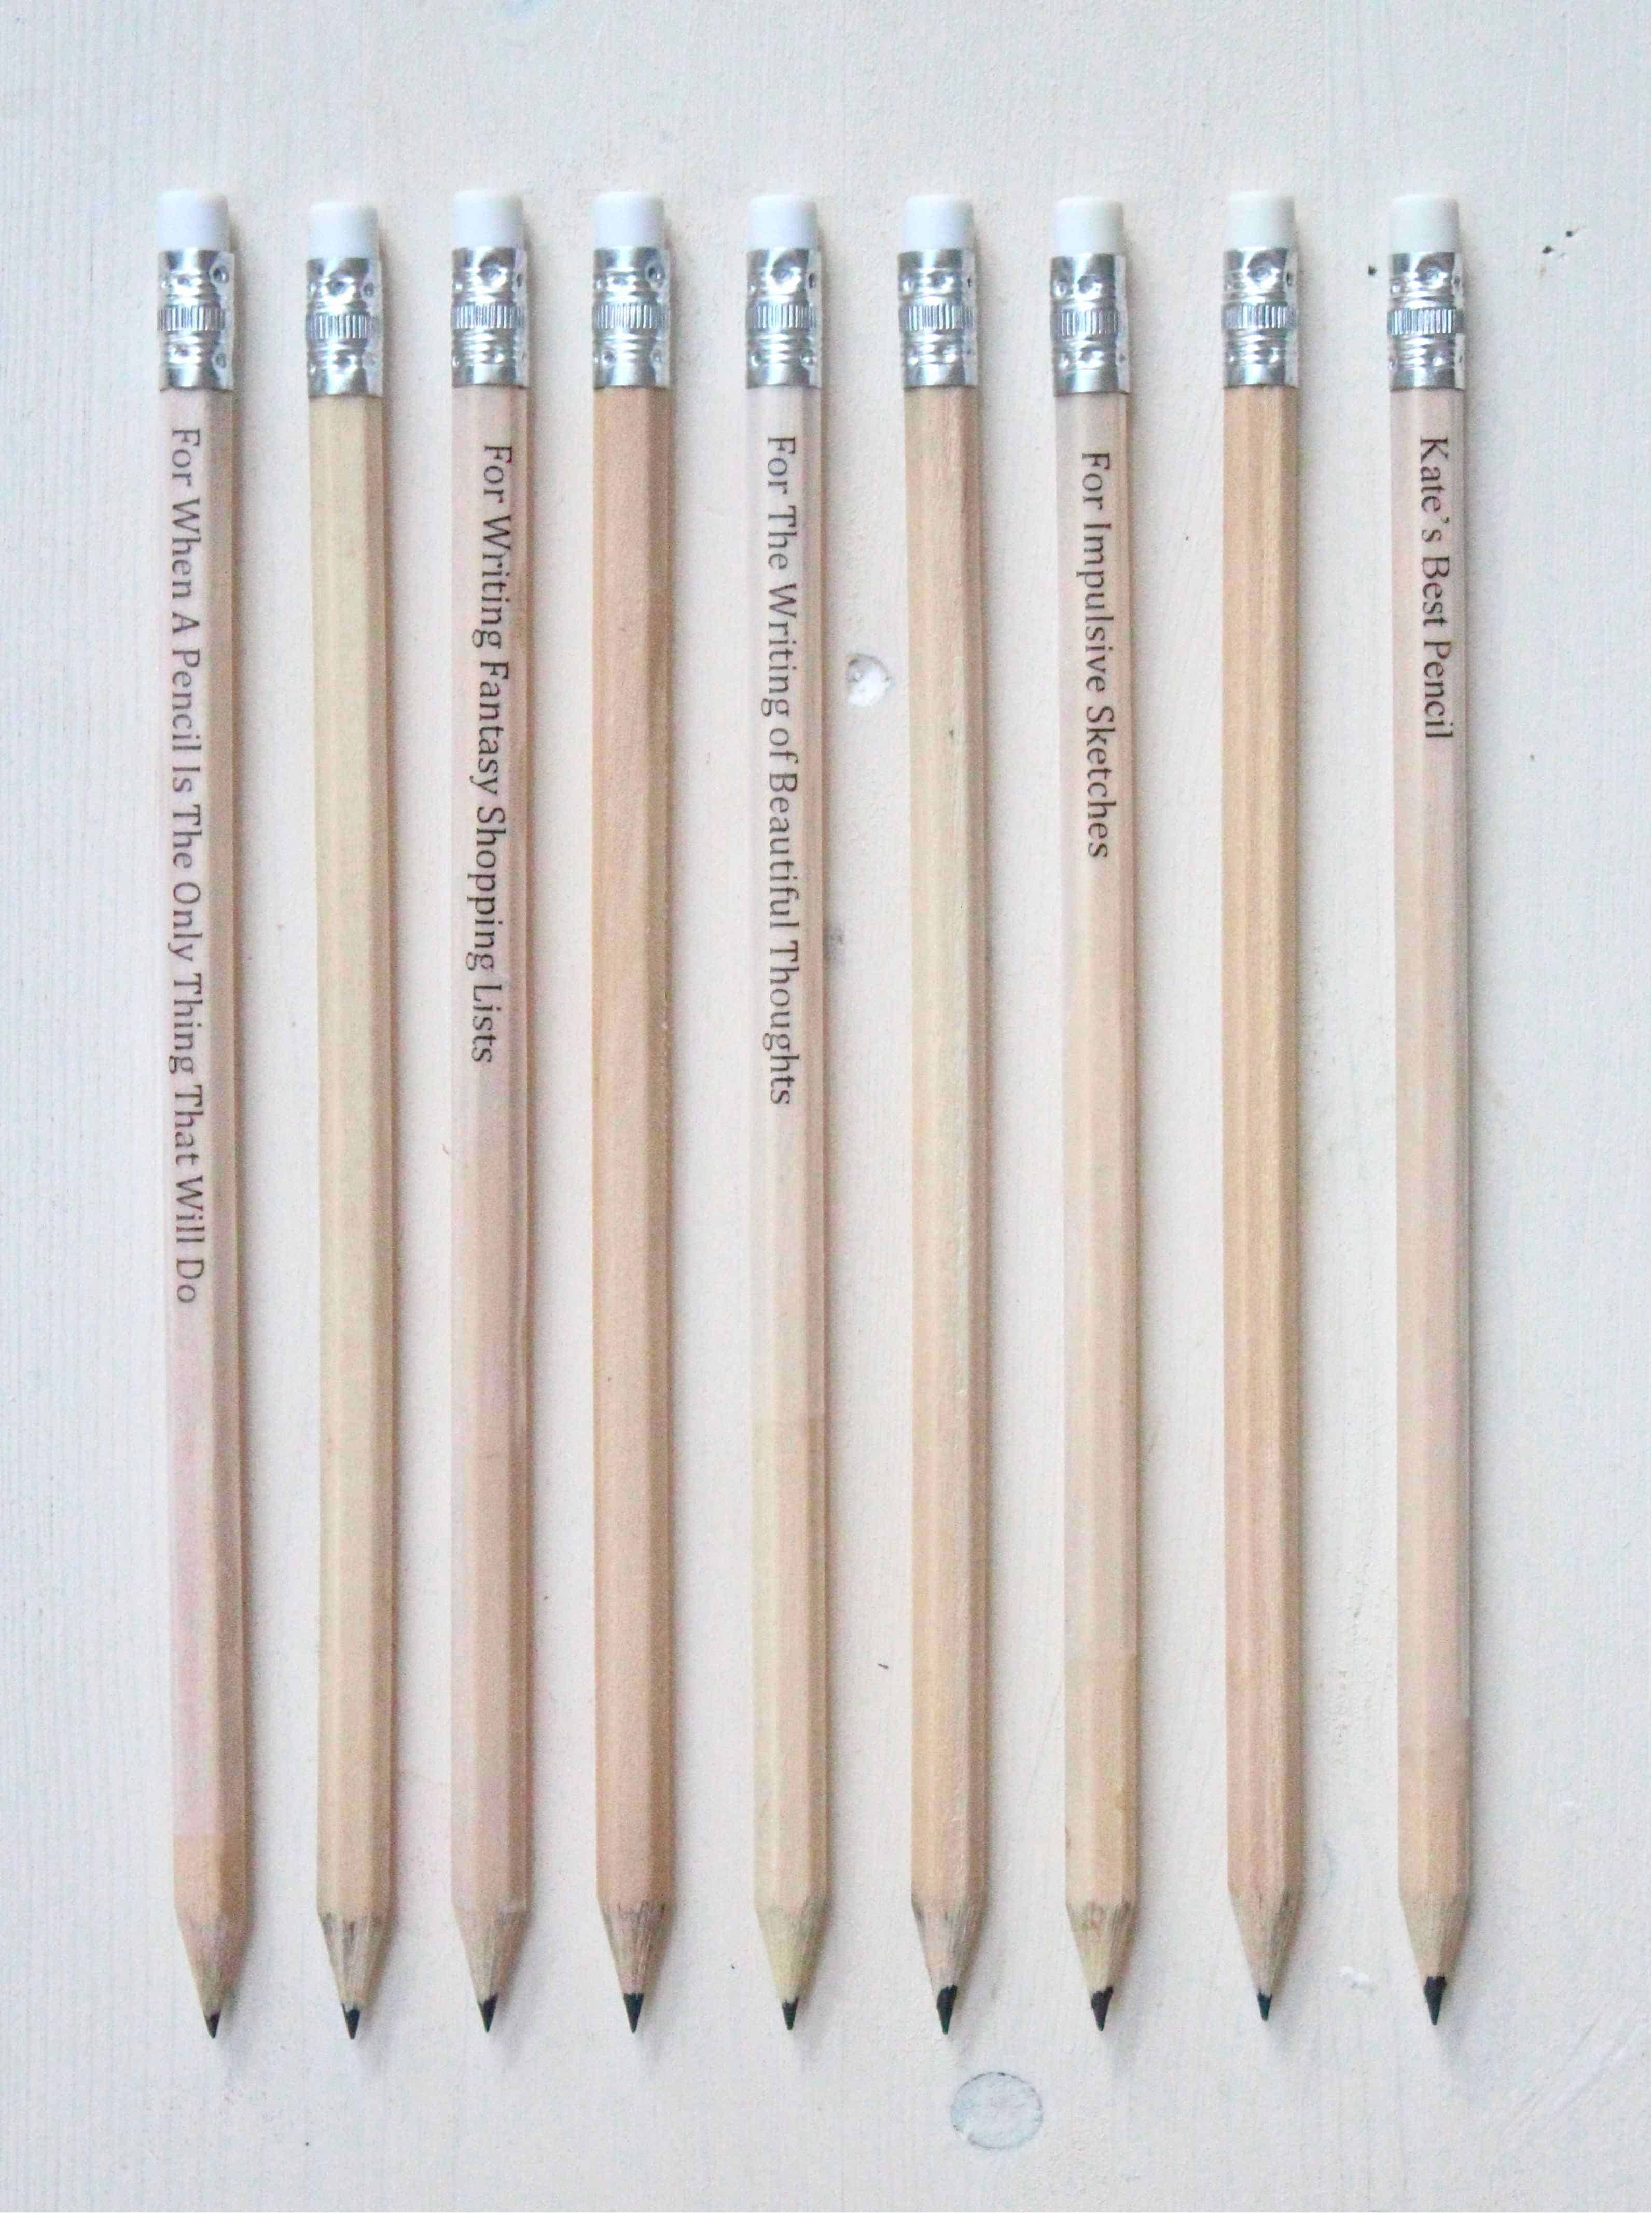 Worded pencils